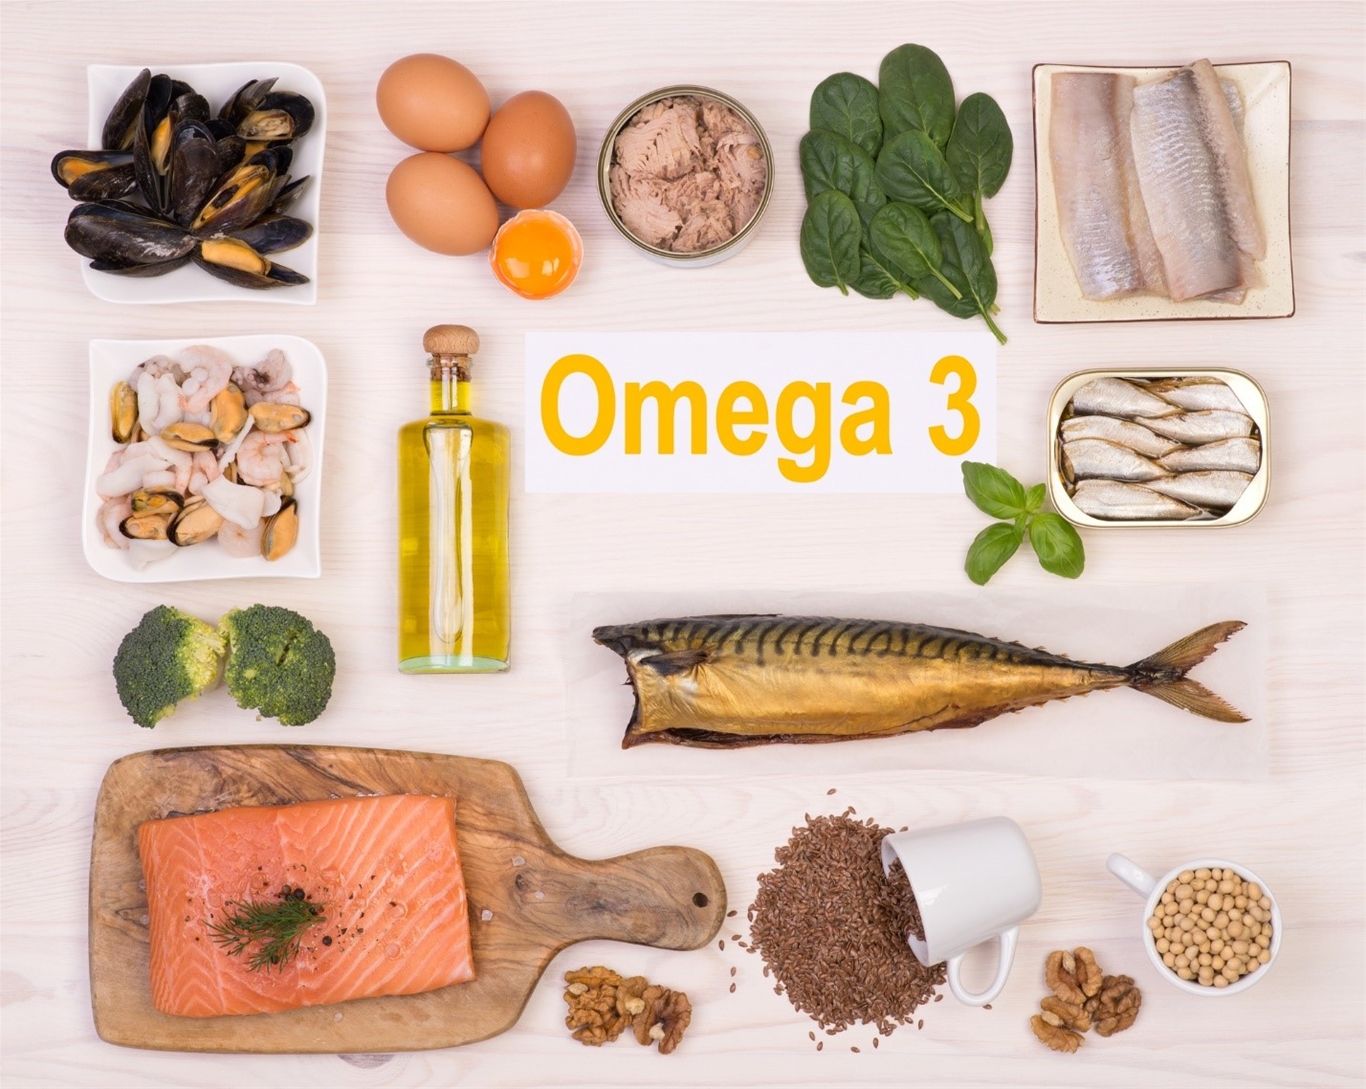 Cá mòi, cá hồi, cá thu và cá ngừ là những thực phẩm giàu omega-3